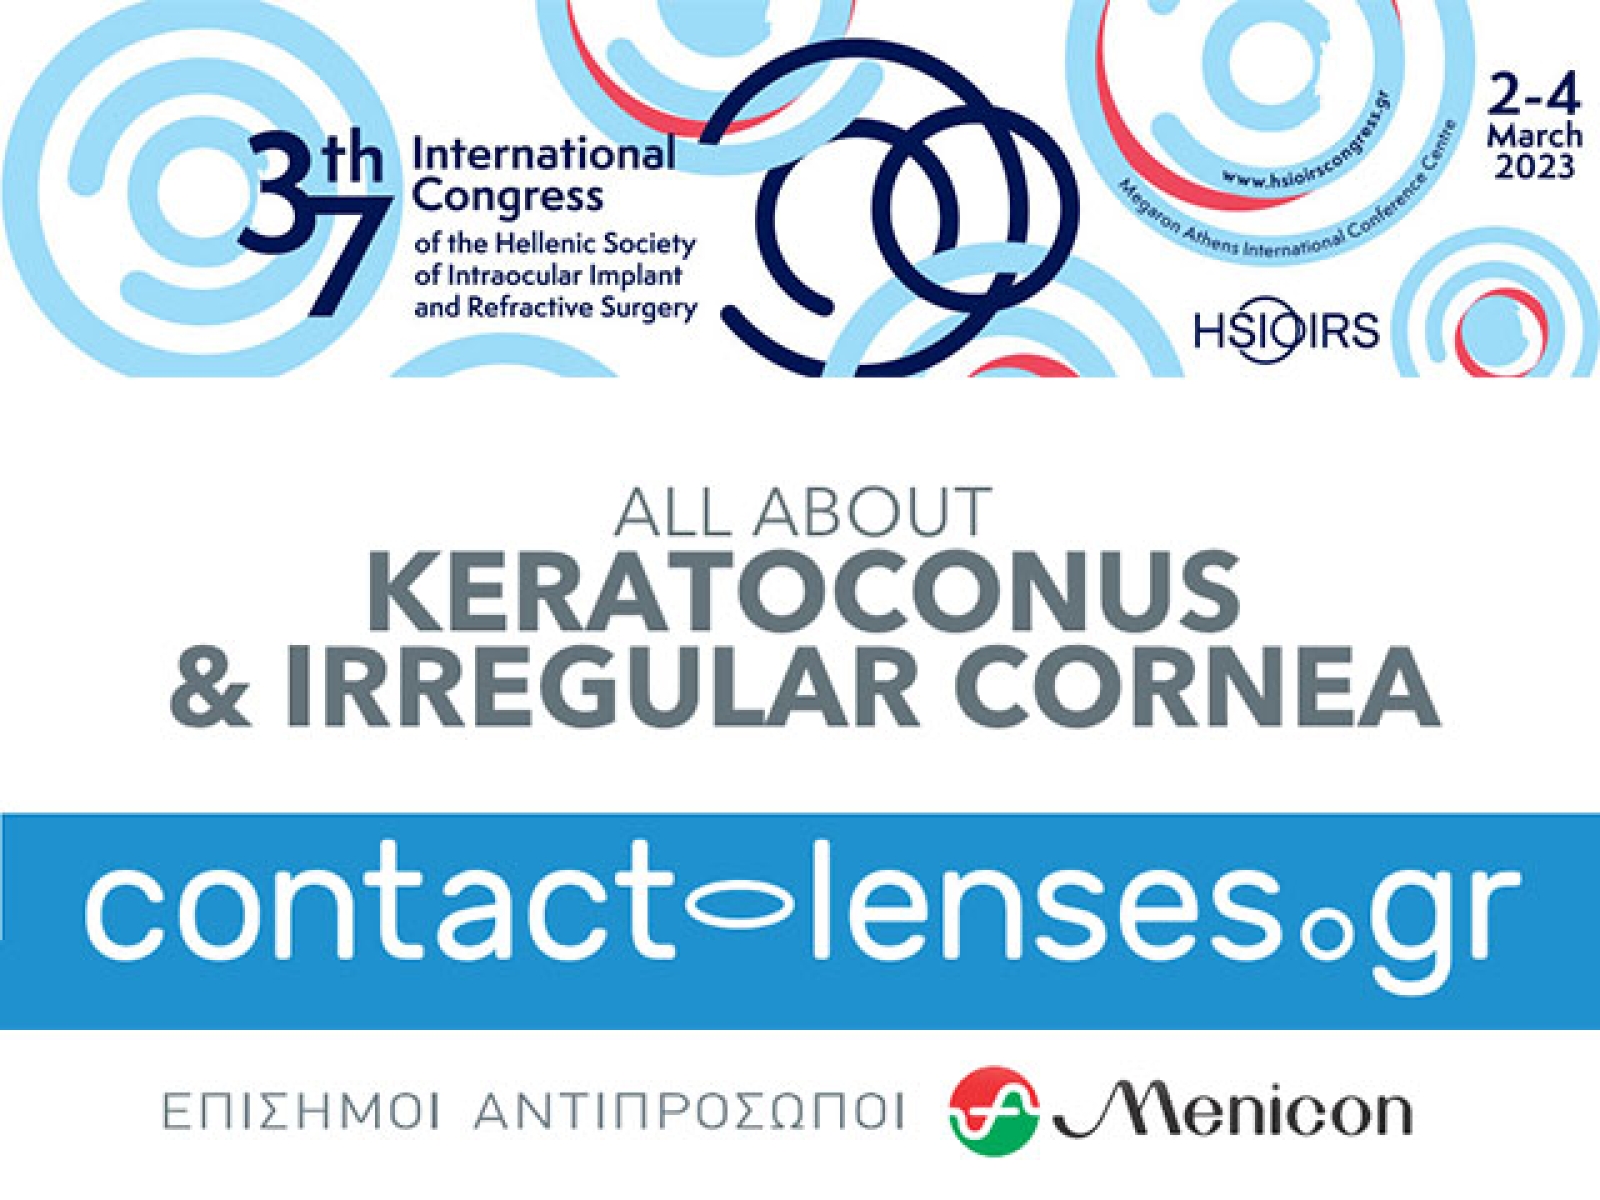 Η Contact-lenses.gr στο 37ο Διεθνές Συνέδριο  Ενδοφακών & Διαθλαστικής Χειρουργικής